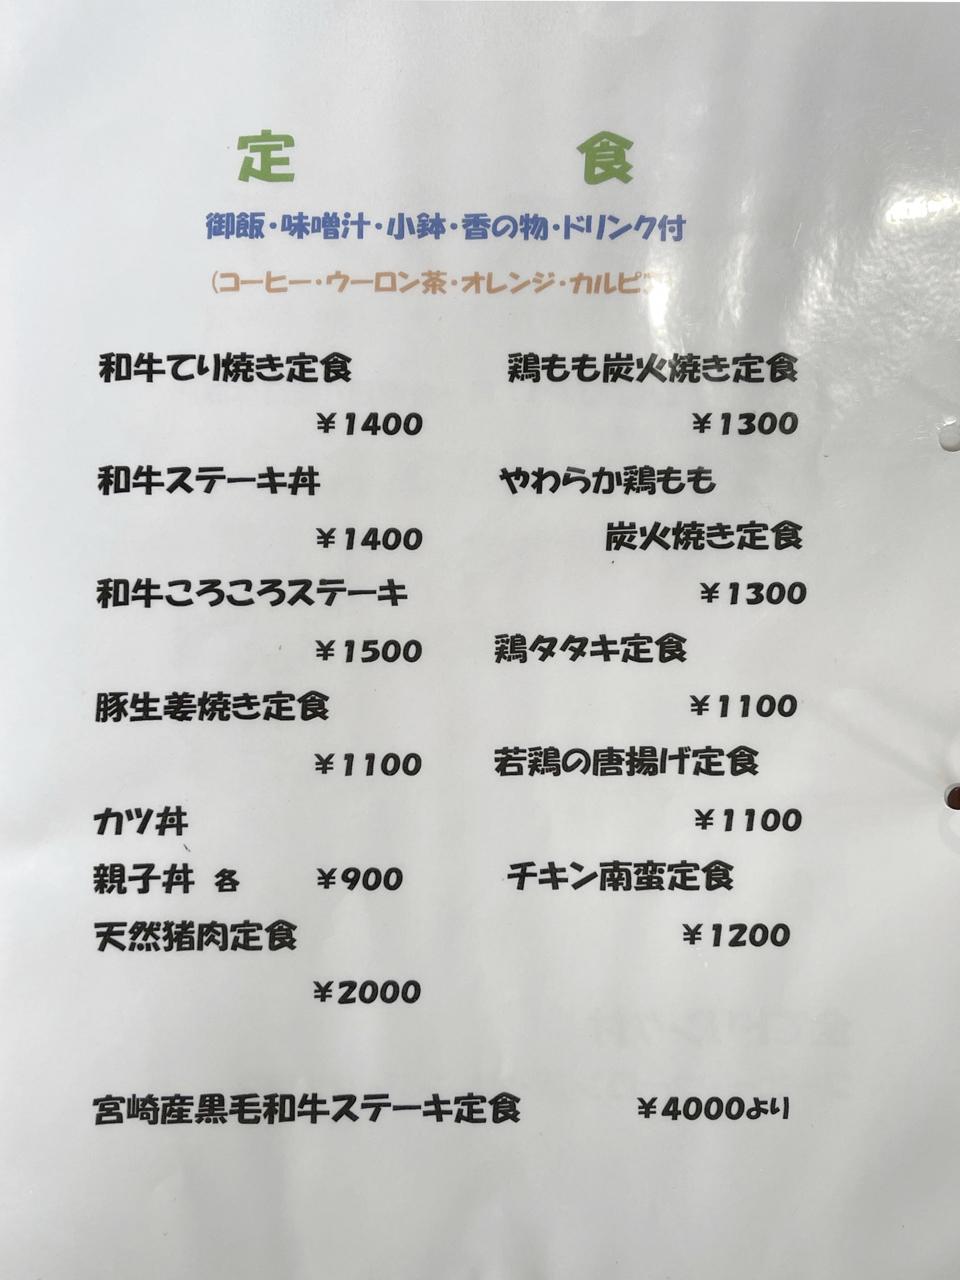 宮崎で昼からおいしい地鶏が食べられるお店『がすこん』に行きました